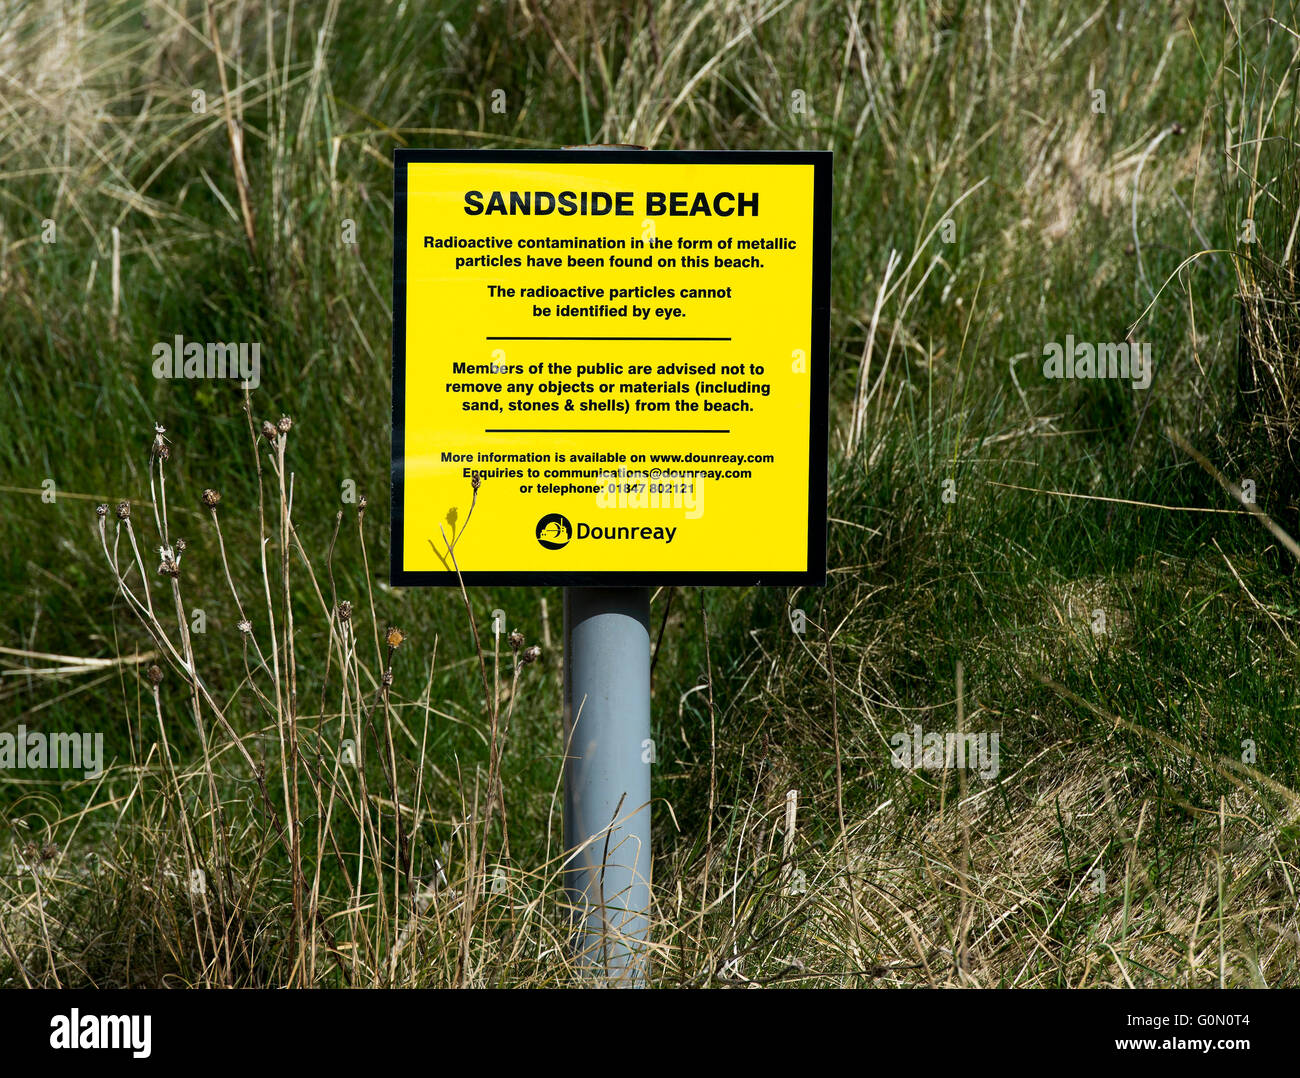 20/04/2016, la advertencia del signo de contaminación radiactiva en forma de partículas metálicas en la playa Sandside, Reay, Caithness, REINO UNIDO Foto de stock